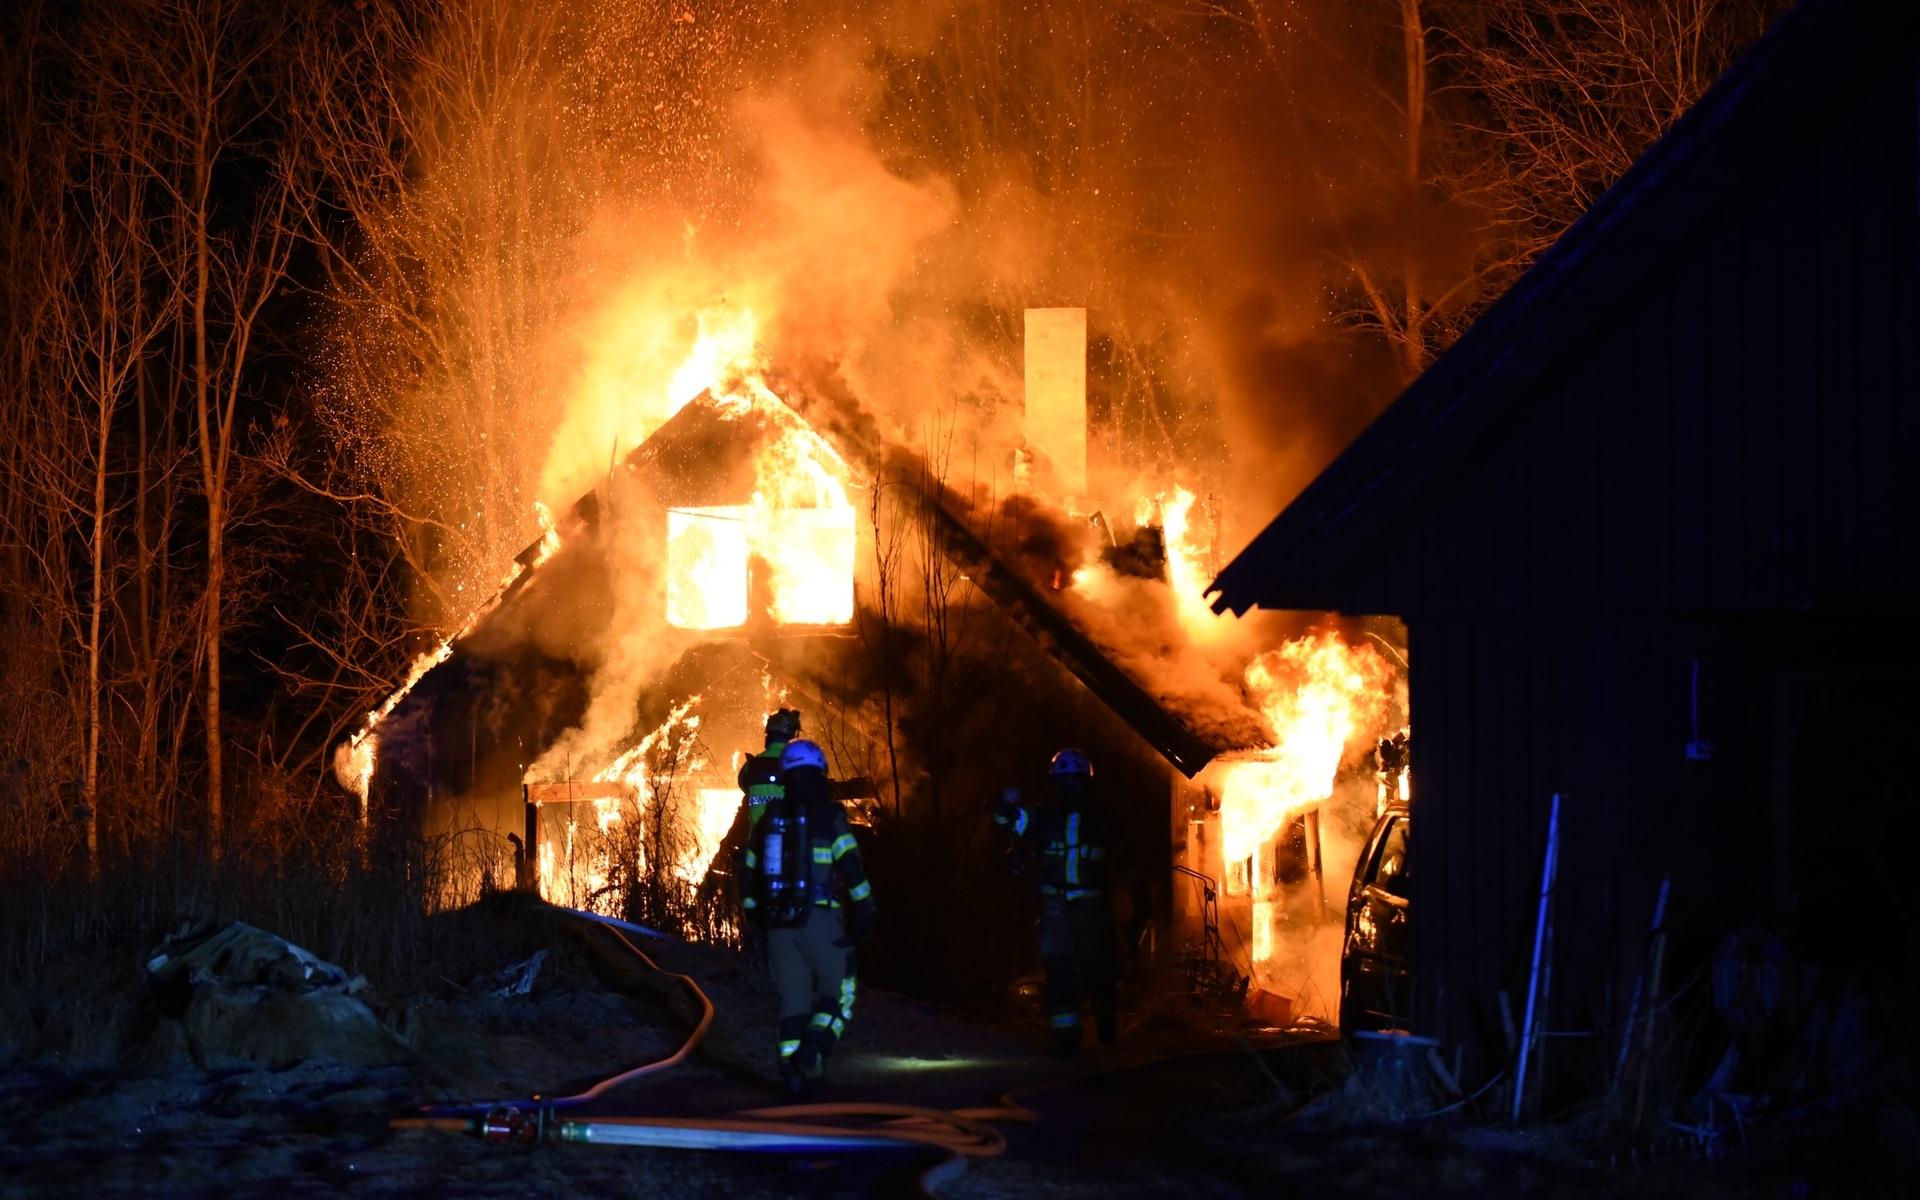 Villa i brand i Kristevik under torsdagskvällen.